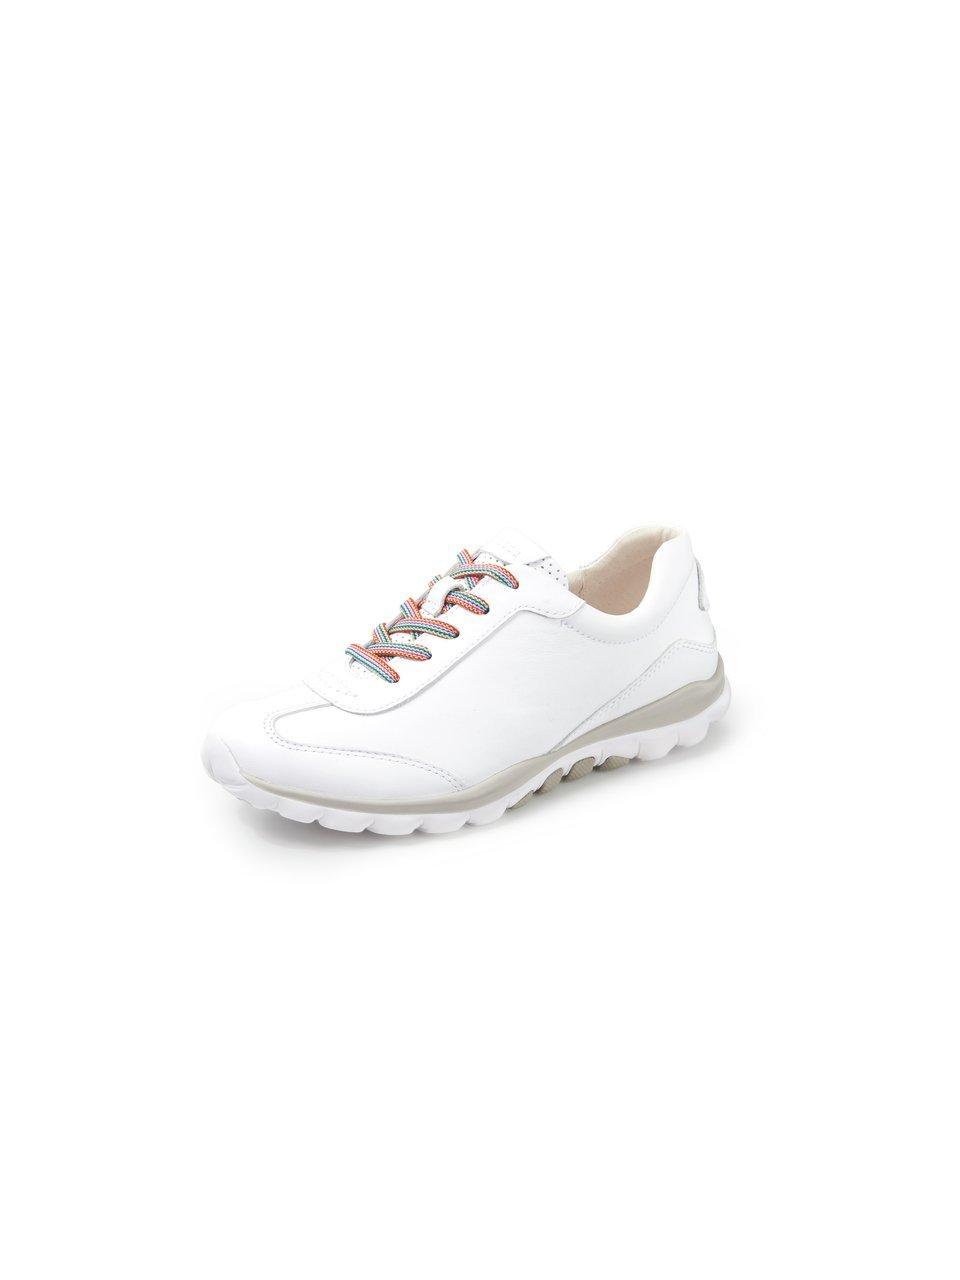 Gabor rollingsoft sensitive 26.965.50 - dames rollende wandelsneaker - wit - maat 37.5 (EU) 4.5 (UK)